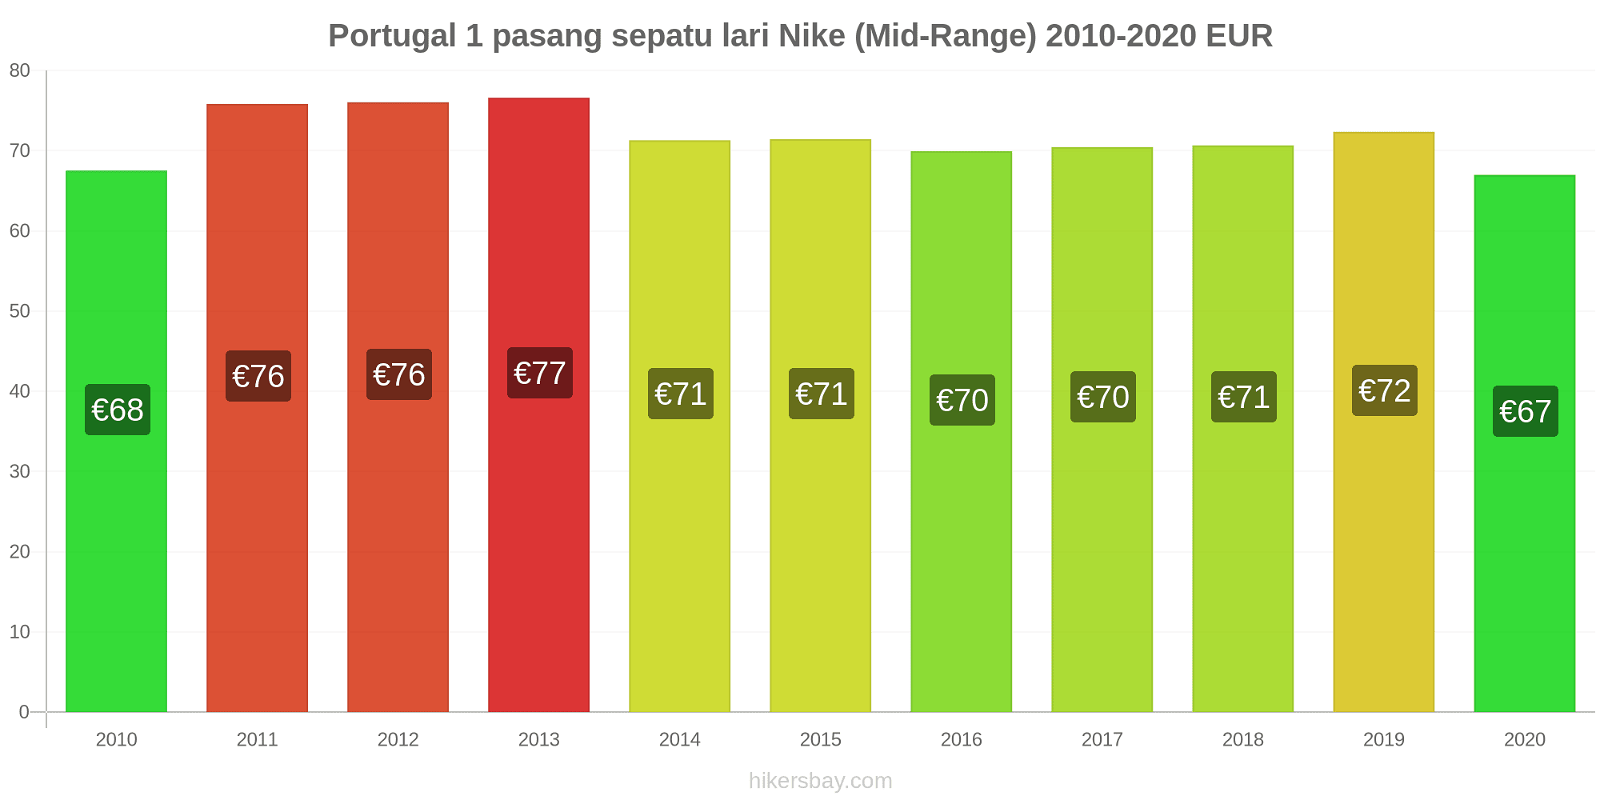 Portugal perubahan harga 1 pasang sepatu lari Nike (Mid-Range) hikersbay.com